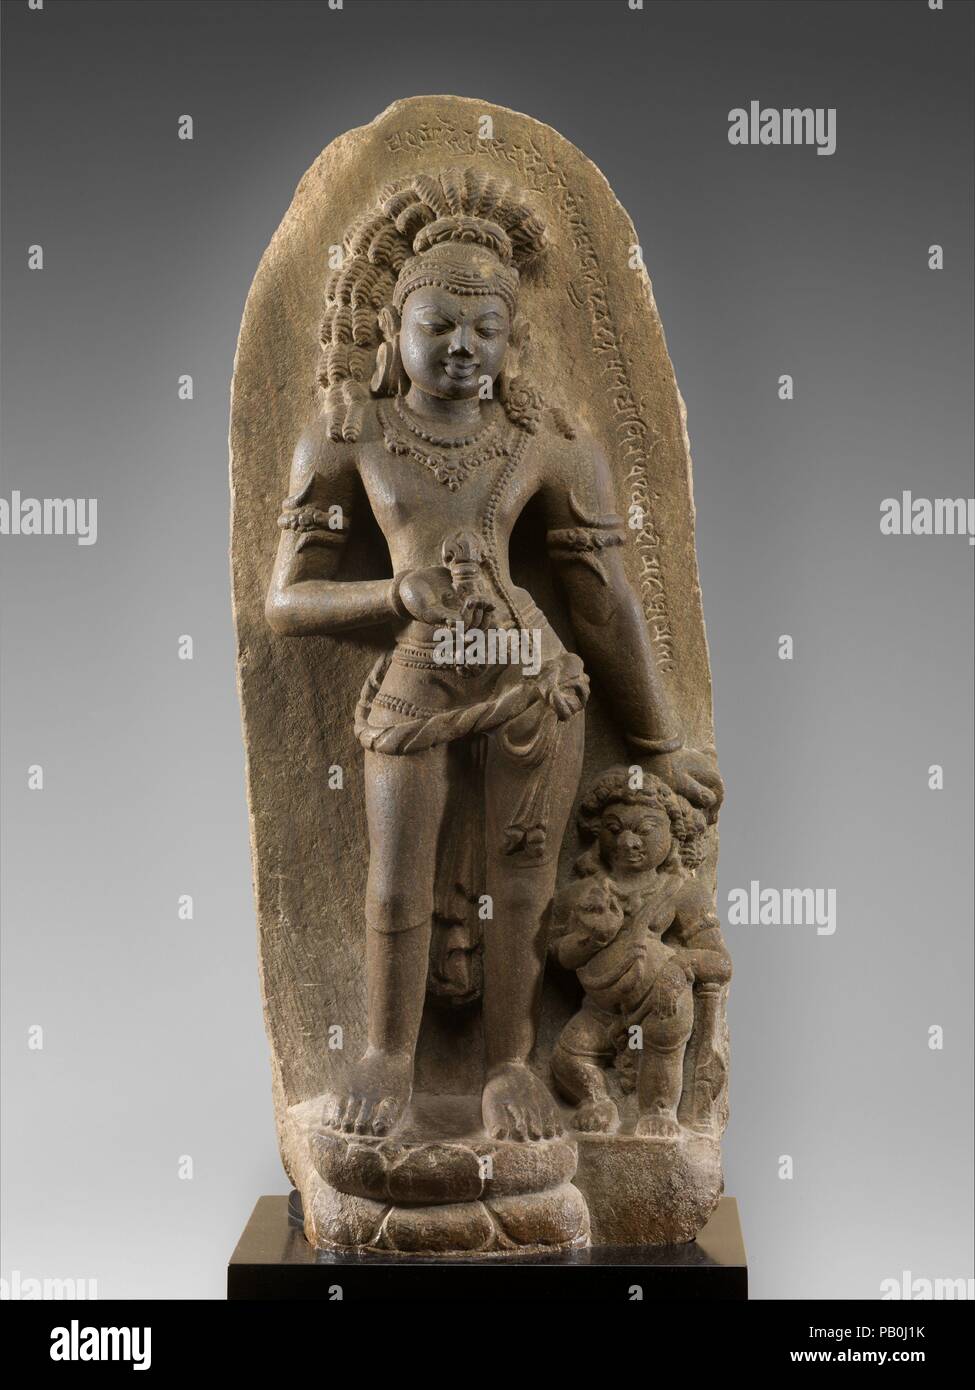 Vajrapani, Thunderbolt-cuscinetto Bodhisattva. Cultura: India Orientale (Bihar, probabilmente Nalanda). Dimensioni: H. 30 7/8 in. (78,4 cm); W. 23 13/16 in. (60,5 cm); D. 6. (15,2 cm). Data: 7th-inizi VIII secolo. Si tratta di una rara rappresentazione del salvatore buddista Vajrapani dal settimo secolo o poco dopo. Vajrapani, il titolare di un' thunderbolt (vajra), condivide le sue origini con la divinità vedica Indra, dio delle tempeste. Presto nella iconografia buddista, thunderbolt scettro ha assunto un significato indipendente associato con chiarezza di pensiero puro che conduce verso l'illuminazione. Cavalletti Vajrapani flex Foto Stock